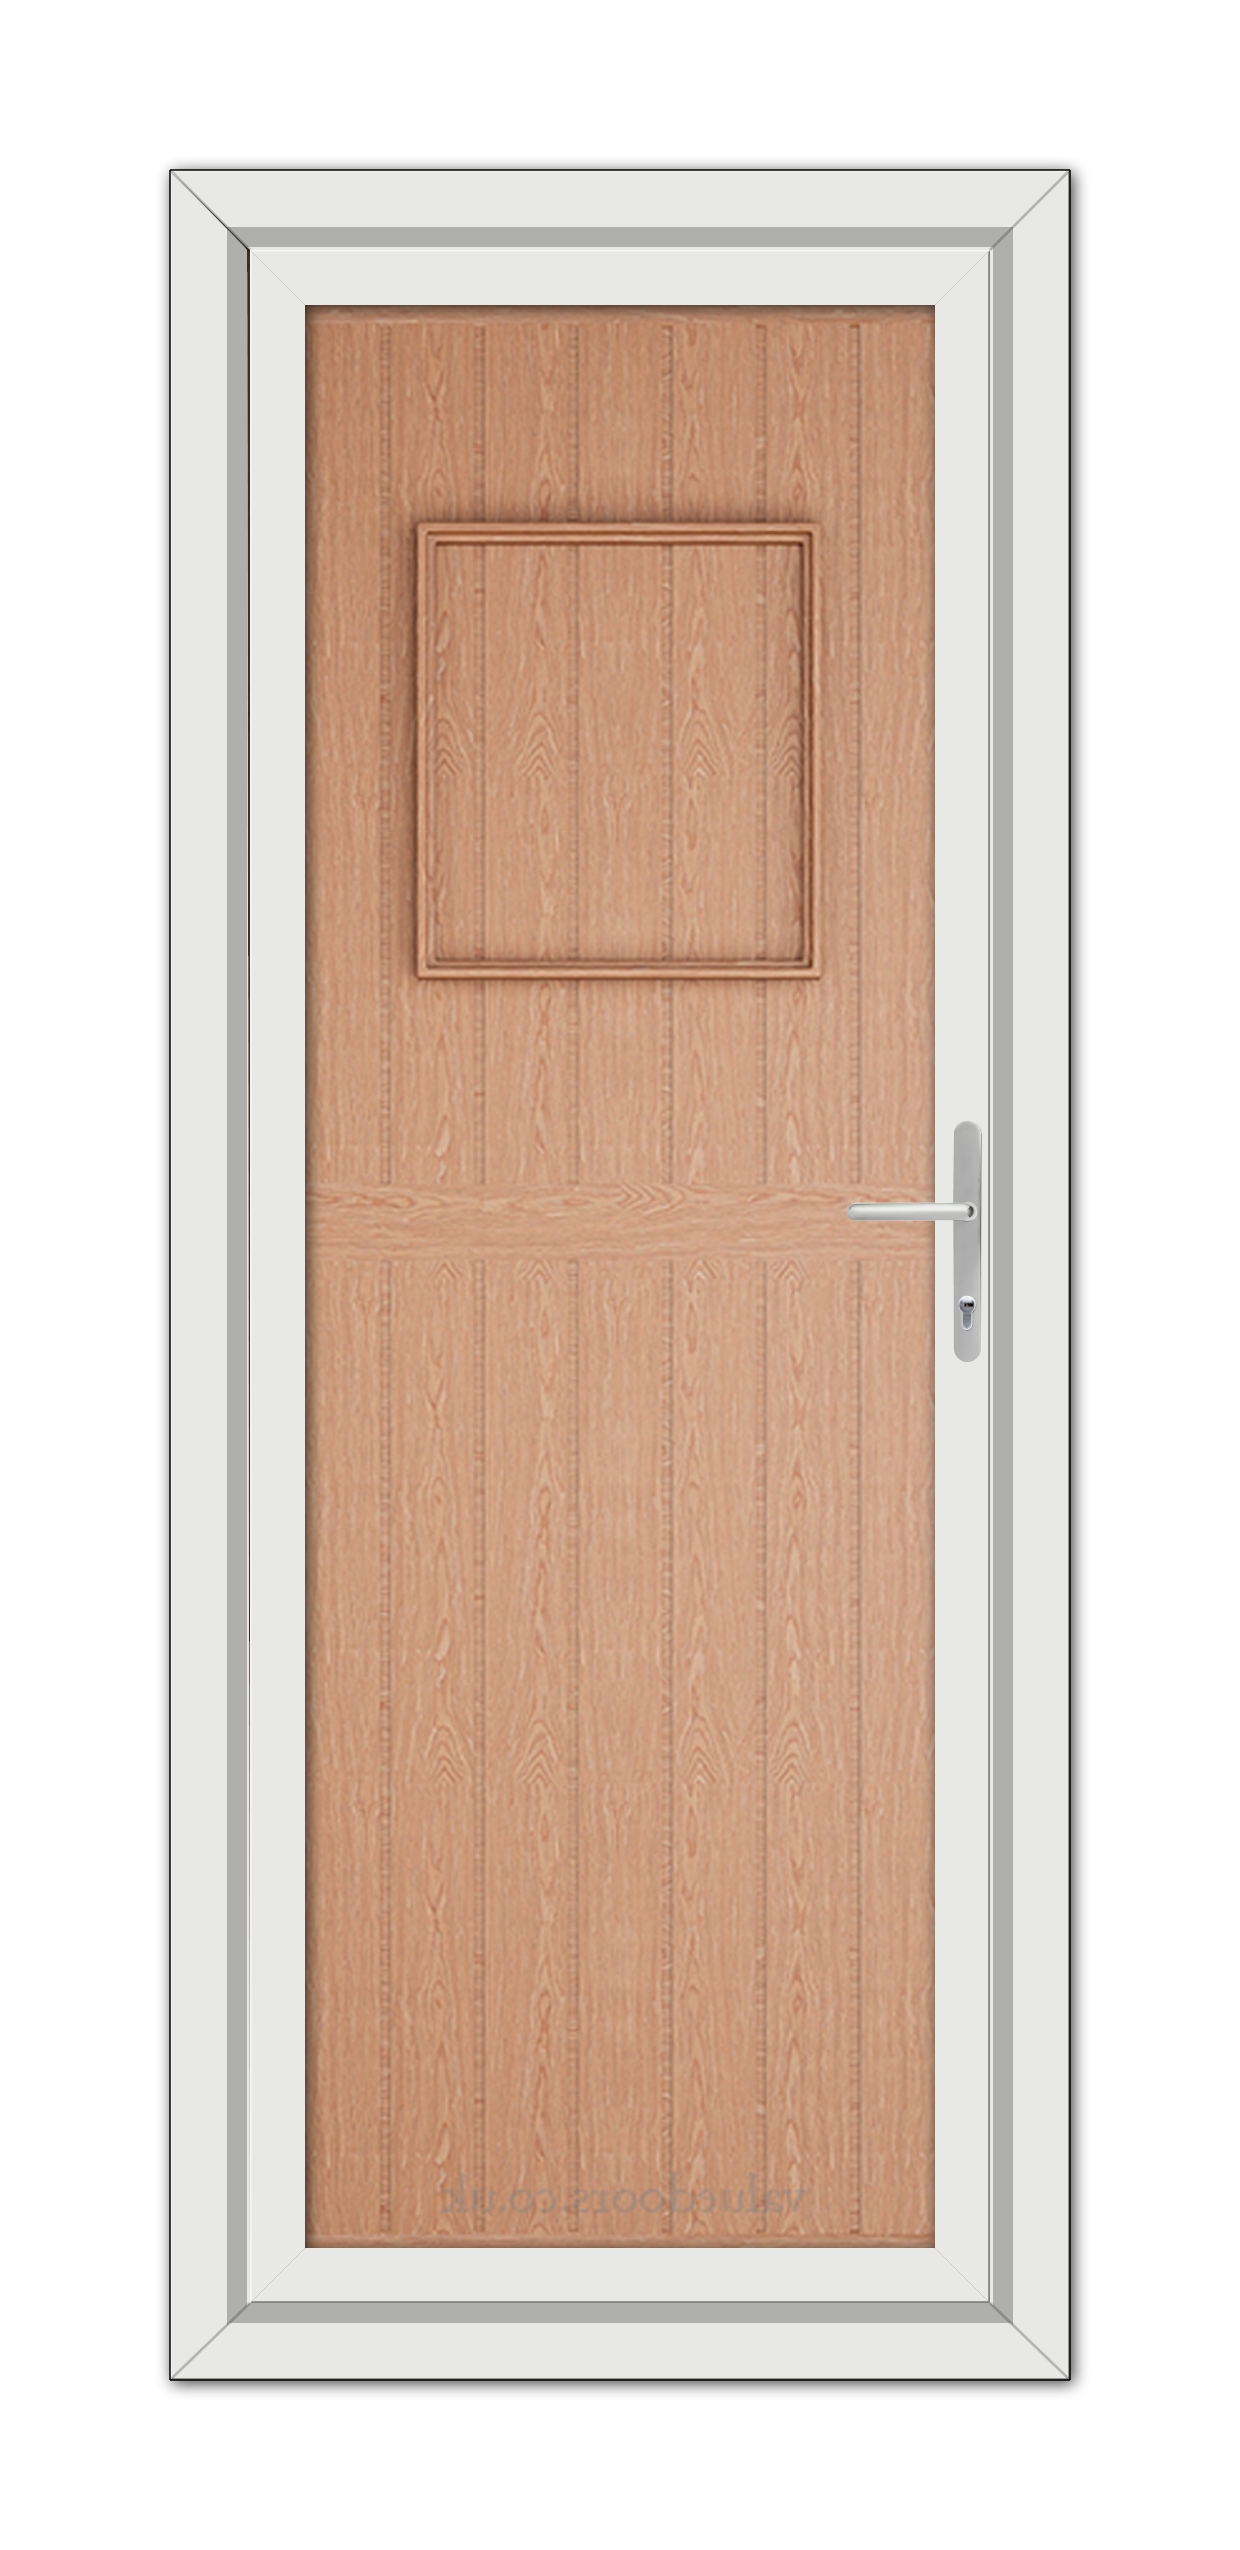 An Irish Oak Chatsworth Solid uPVC door with a square door handle.